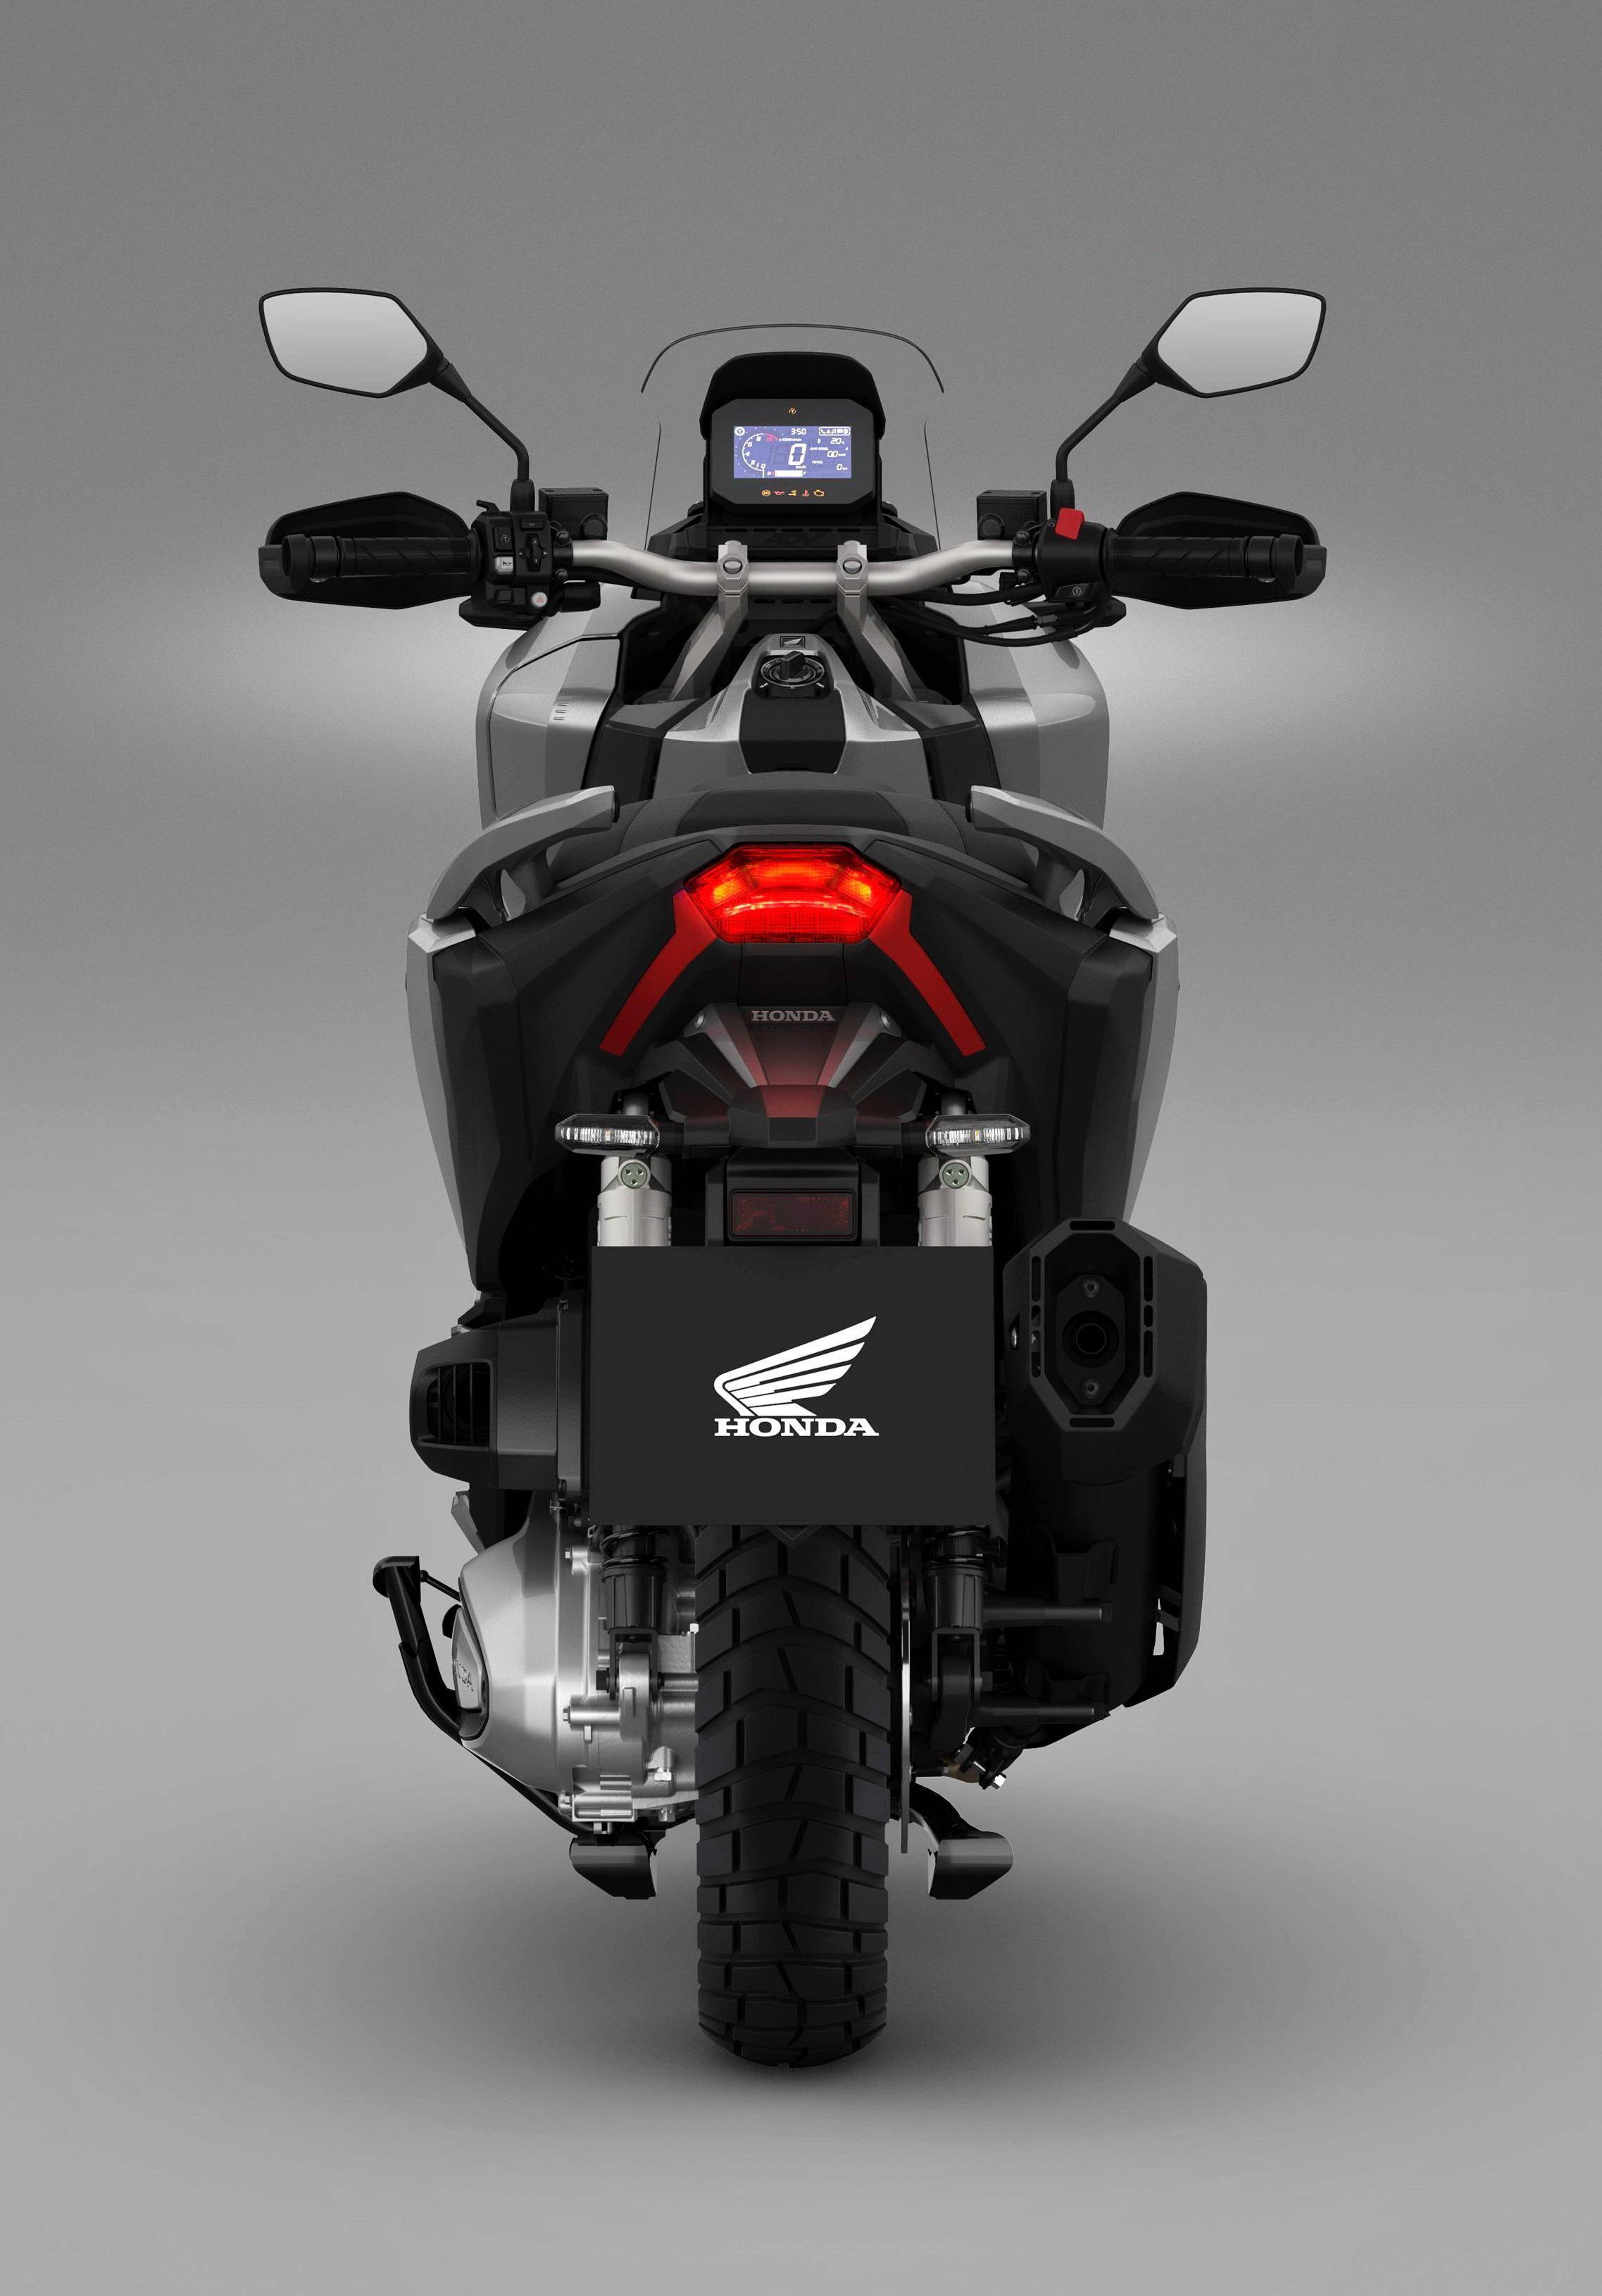 本田摩托350 cc踏板图片